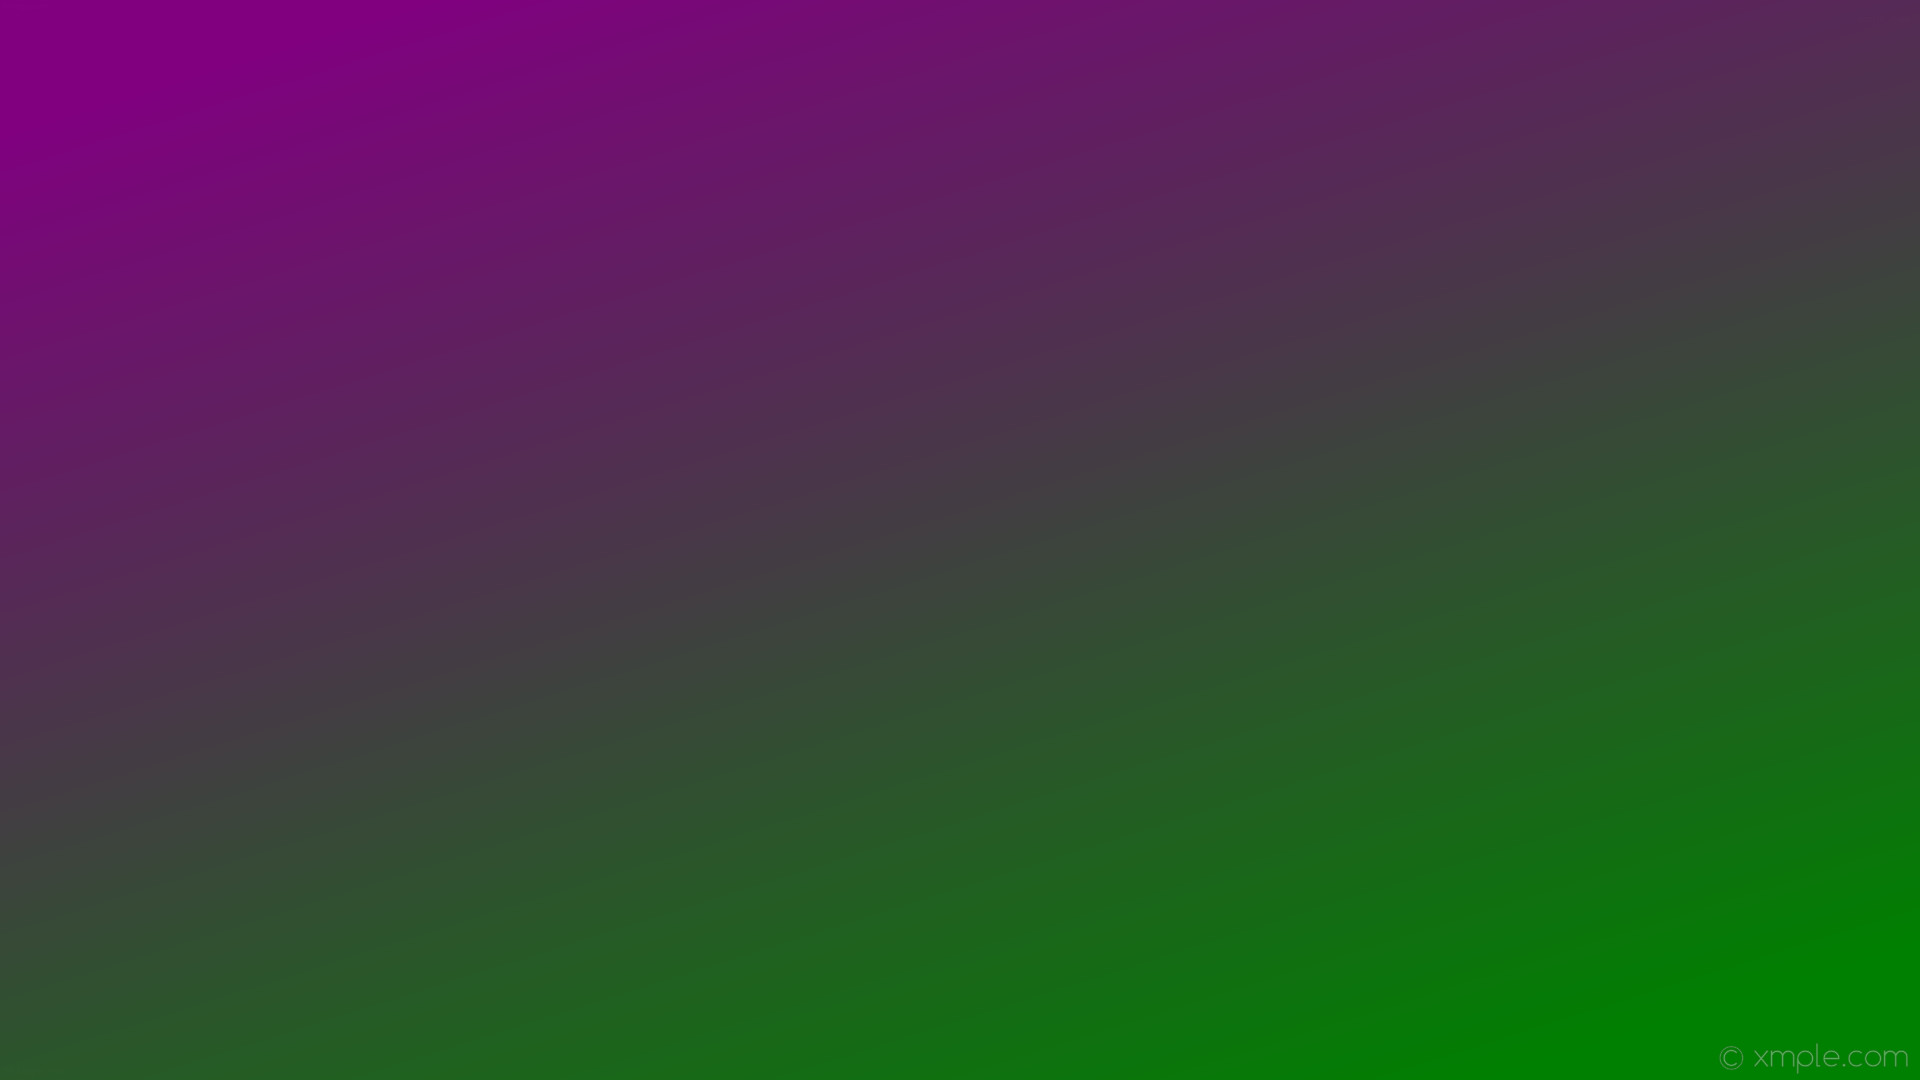 紫と緑の壁紙,緑,バイオレット,紫の,ピンク,ライラック